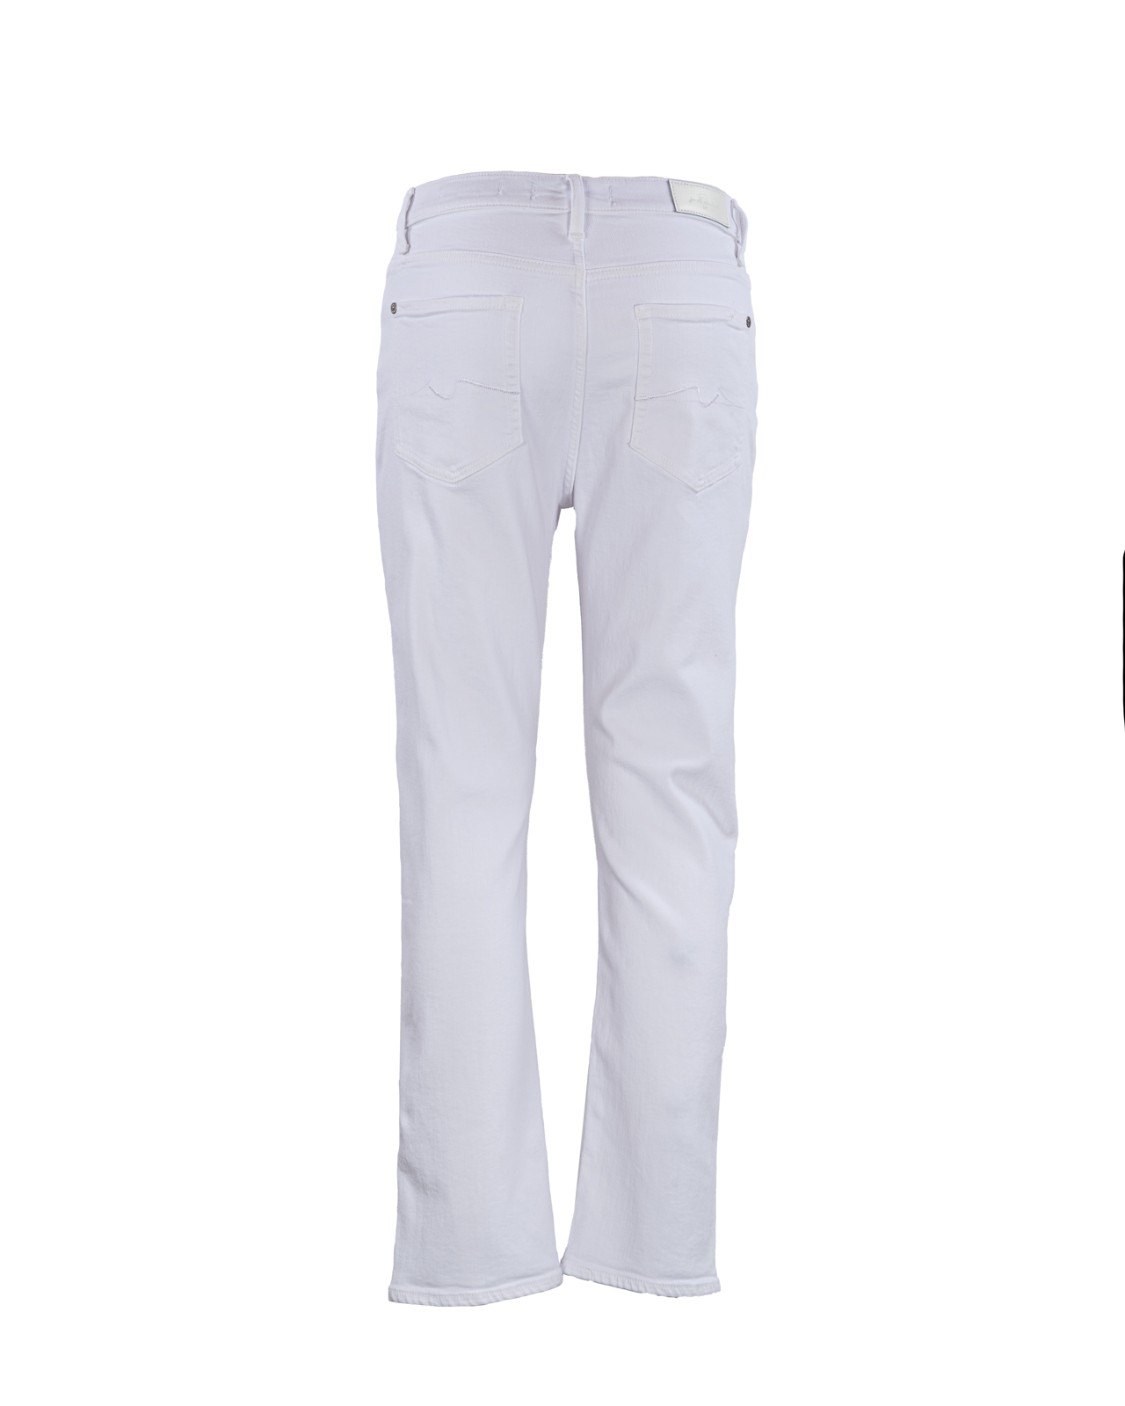 shop SEVEN Saldi Jeans: Seven jeans "Easy Slim".
Vita alta.
Slim.
Tessuto Stretch.
Composizione: Cotone 81% Lyocell 11% Poliestere 6% Elastane 2%.
Fabbricato in Tunisia.. JSELC140WT-WHITE number 811406